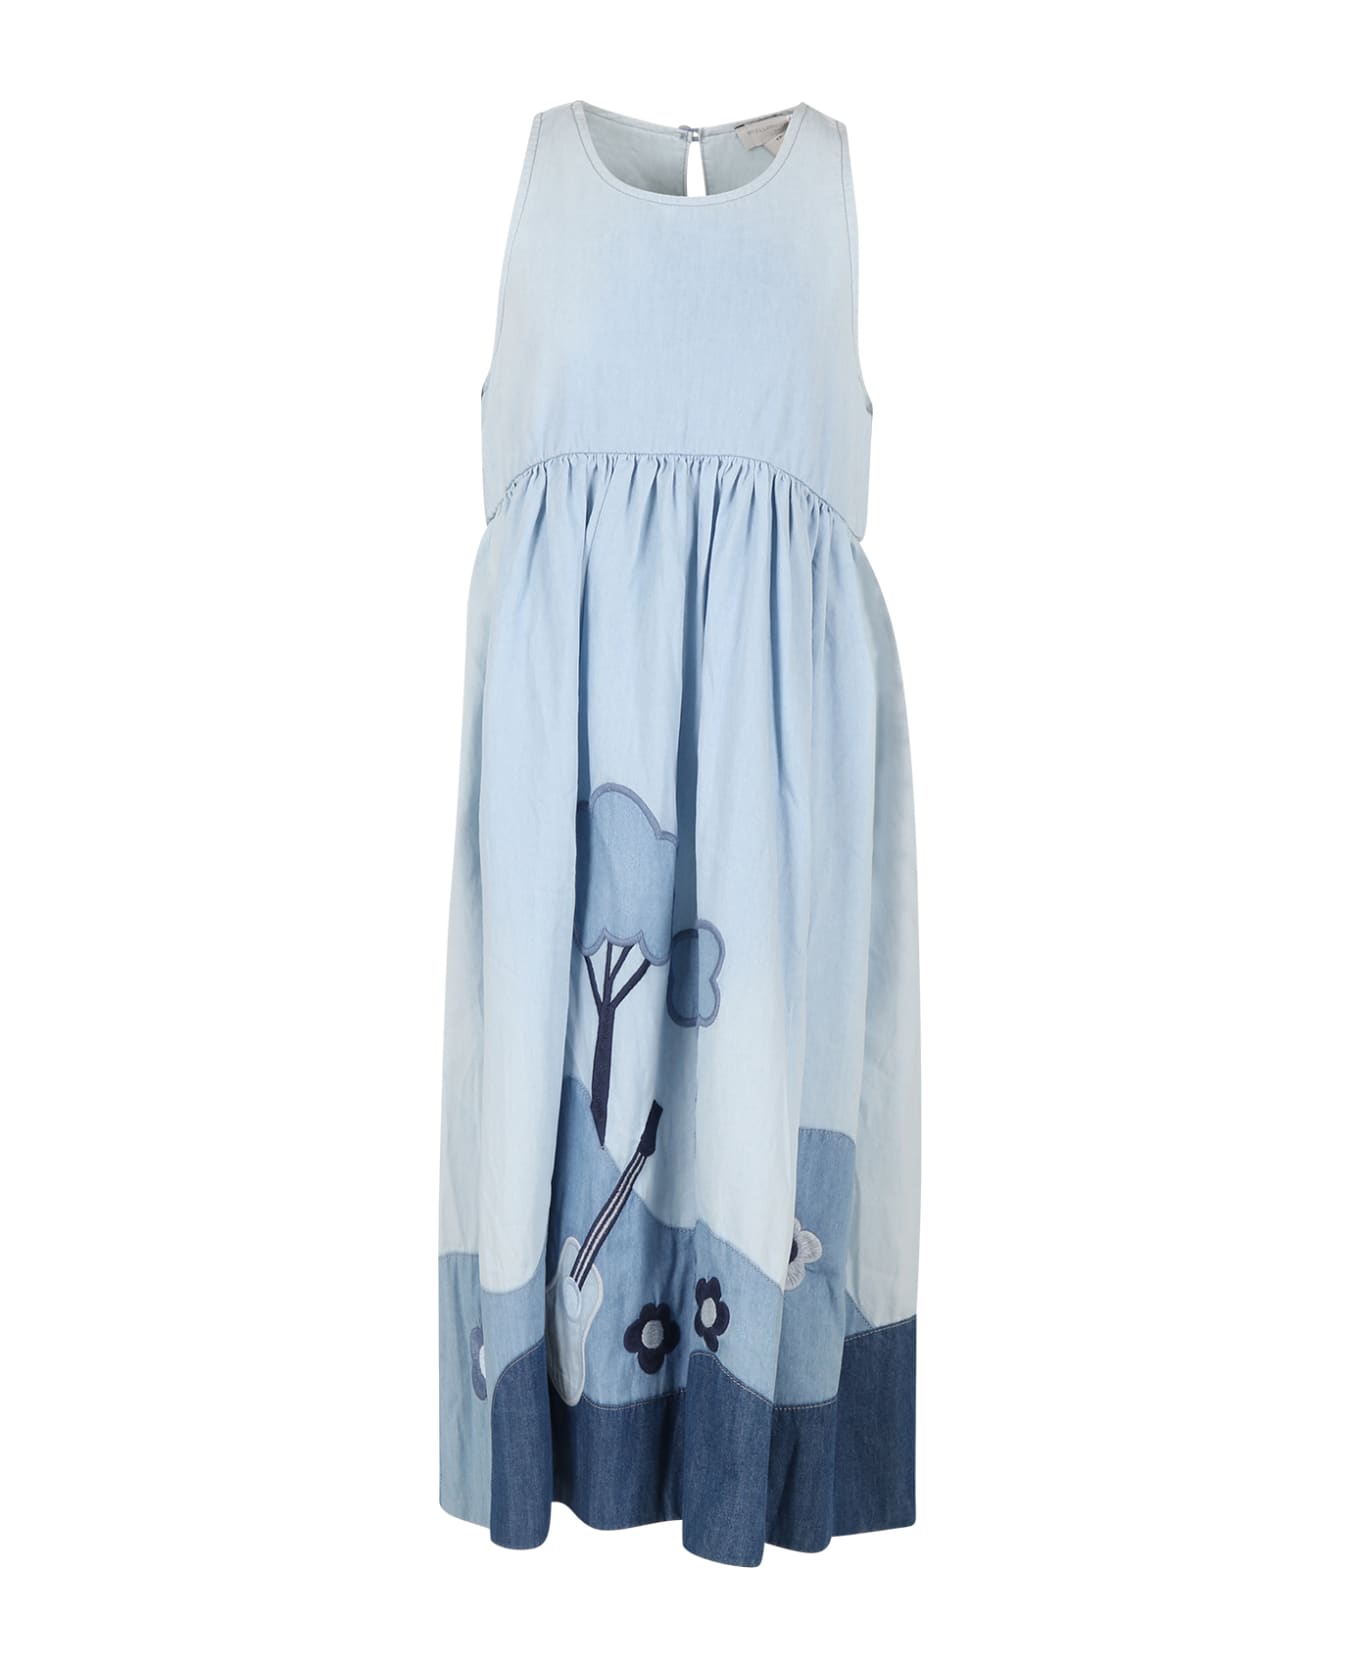 Stella McCartney Kids Light Blue Dress For Girl With Flowers - Light Blue ワンピース＆ドレス